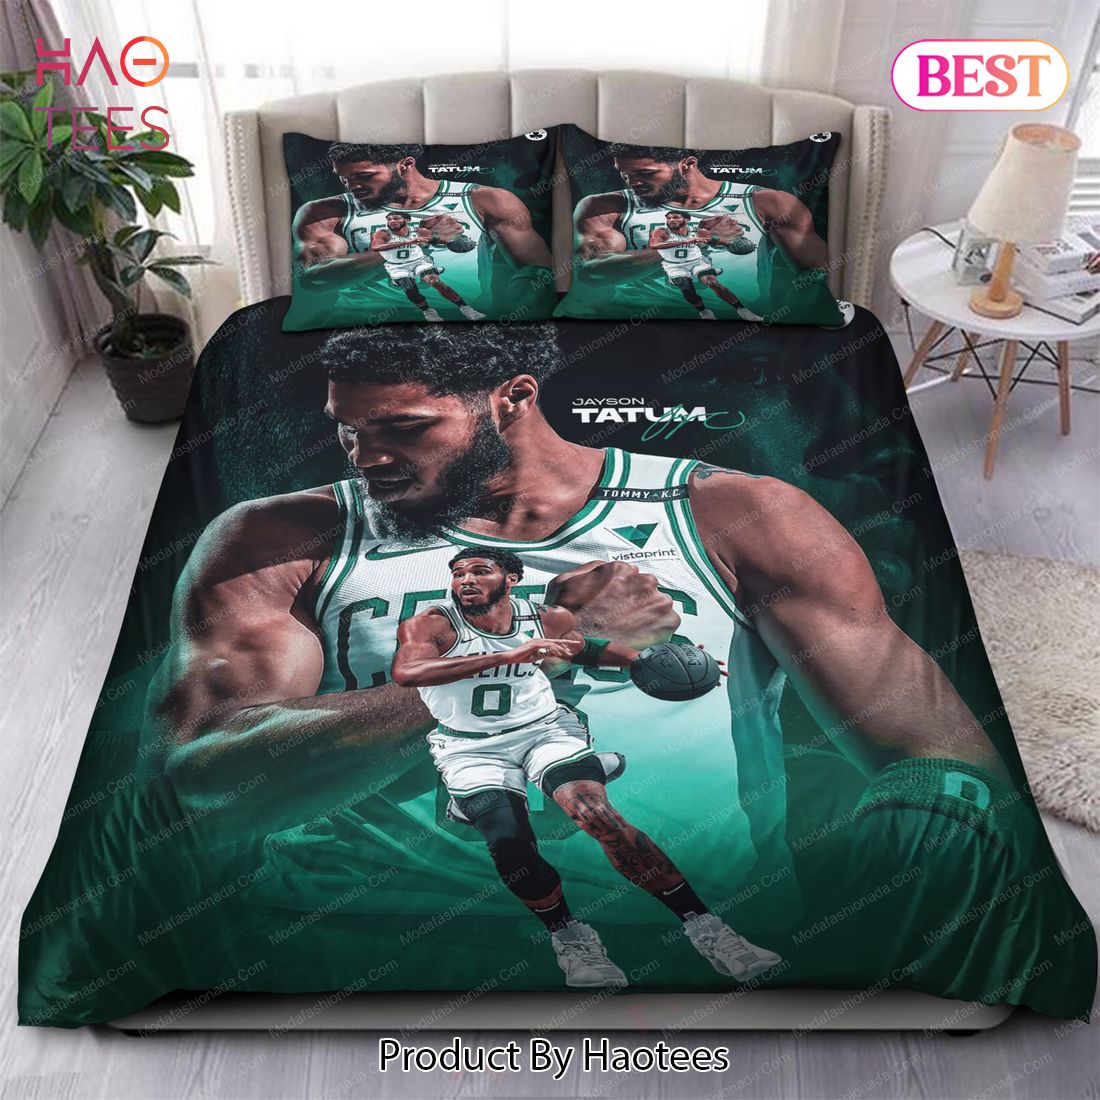 Buy Jayson Tatum Boston Celtics NBA 133 Bedding Sets Bed Sets, Bedroom Sets, Comforter Sets, Duvet Cover, Bedspread